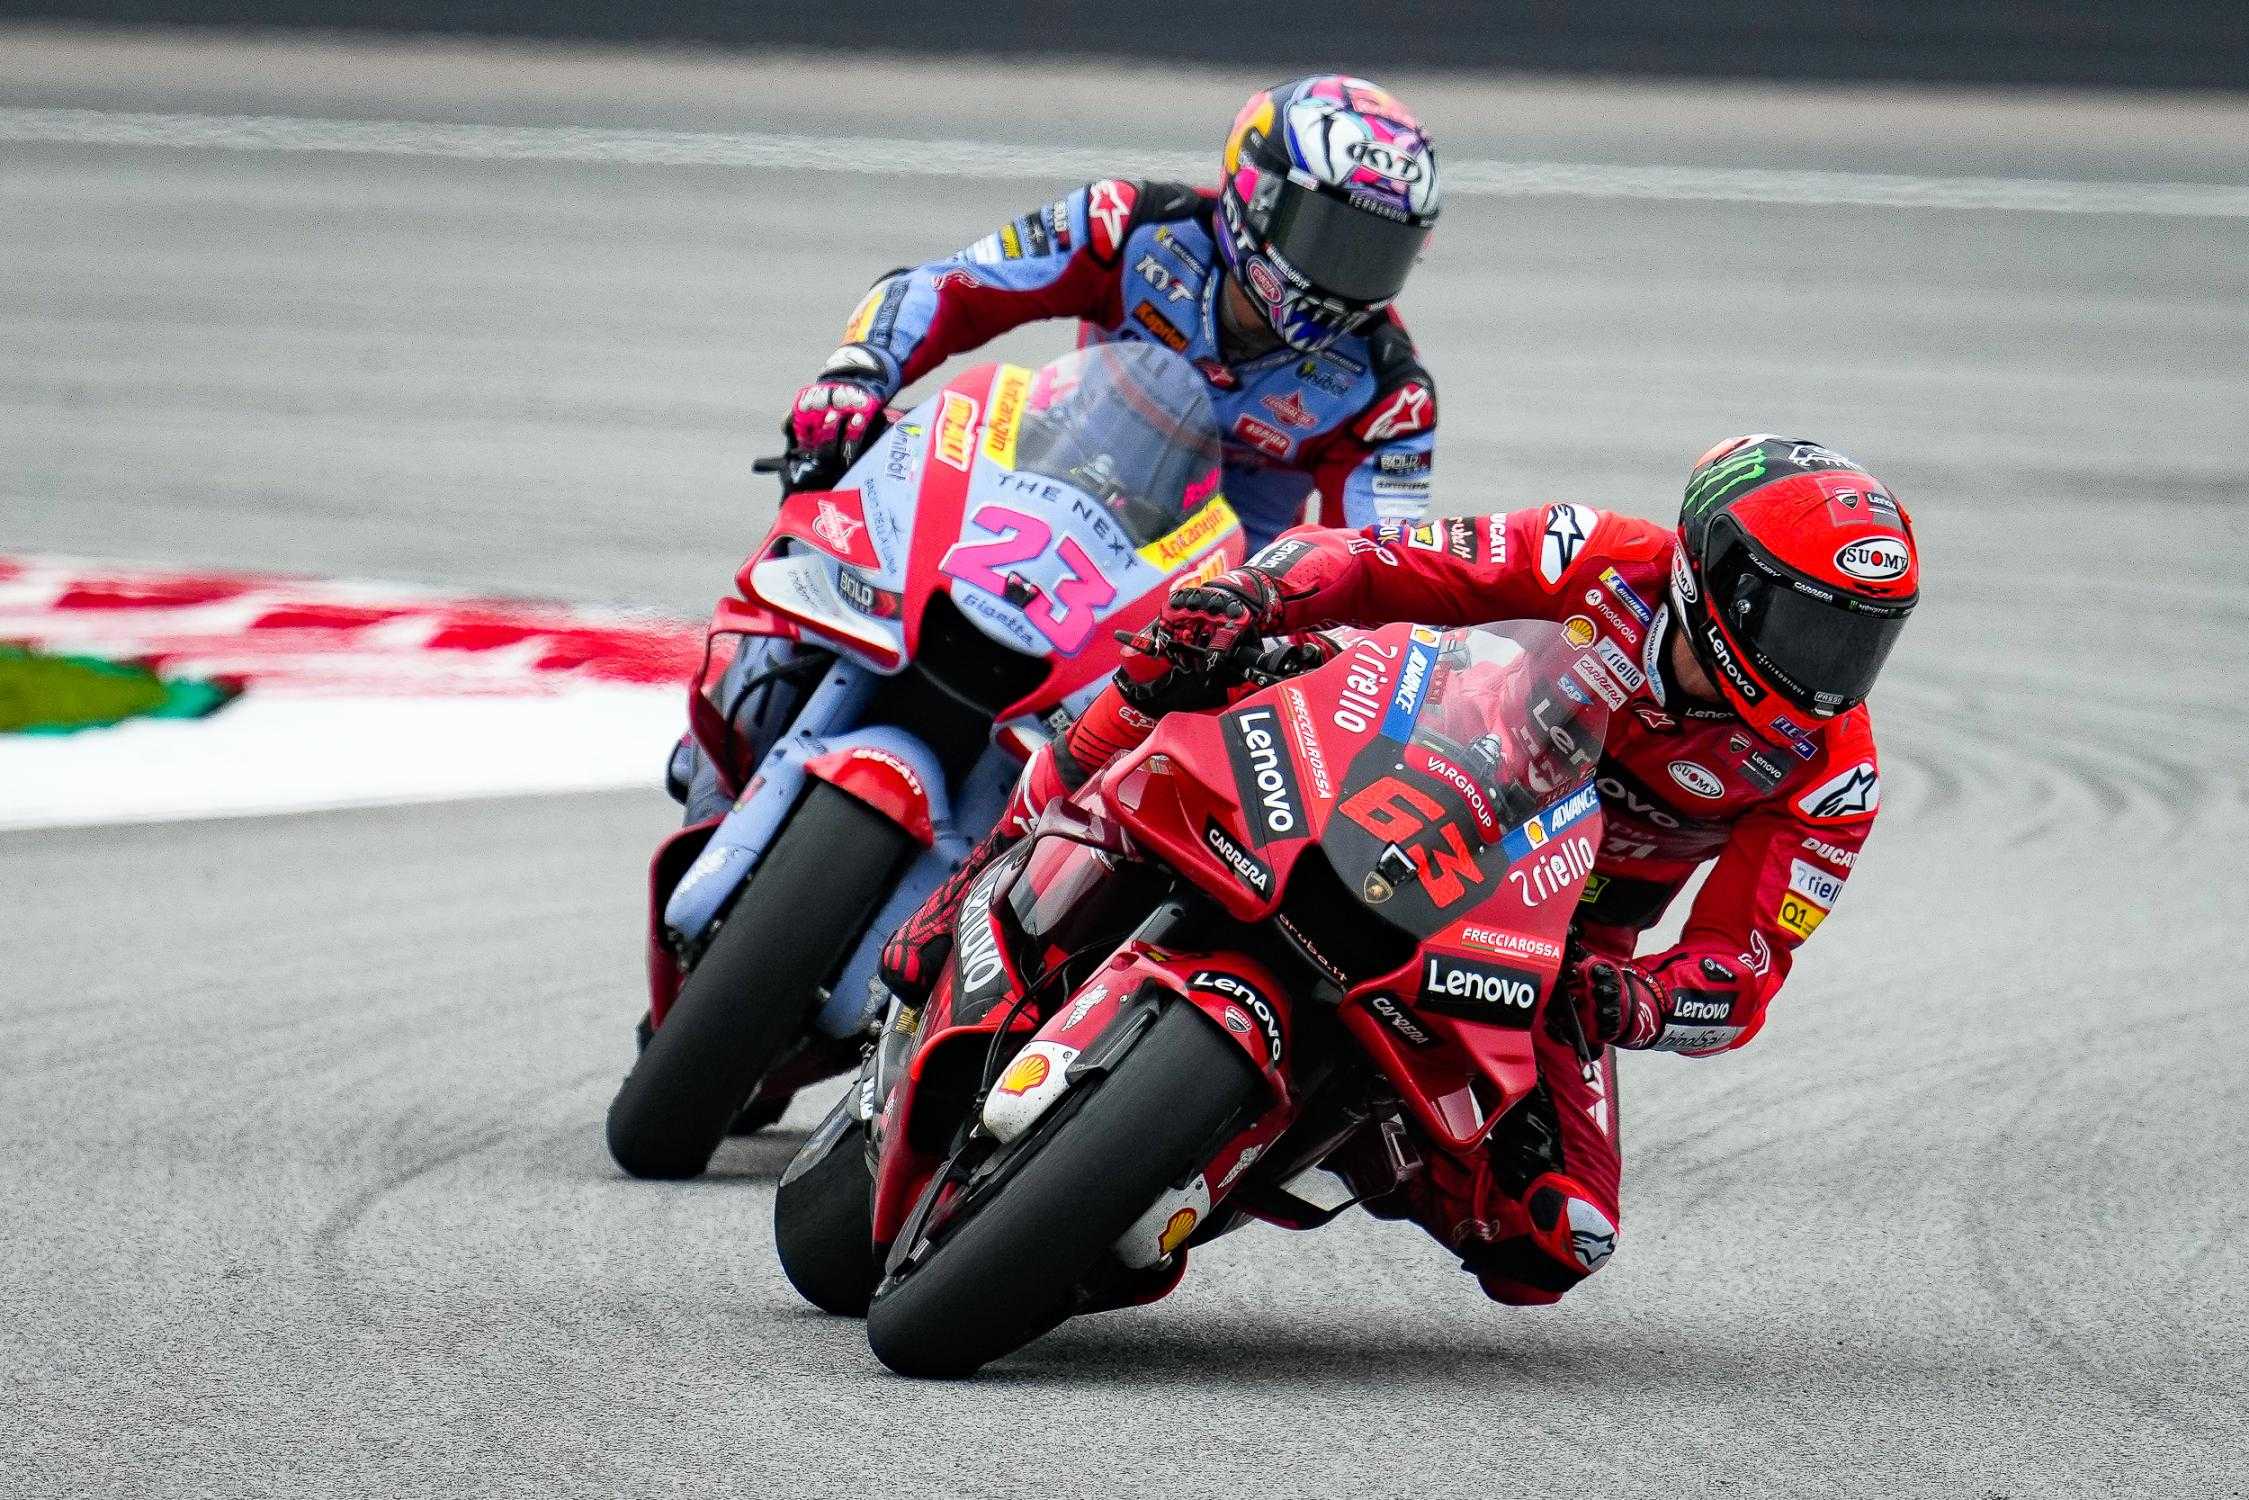 Ducati et consignes à Sepang : « Enea était libre de gagner, on ne veut juste pas de dépassement dangereux »